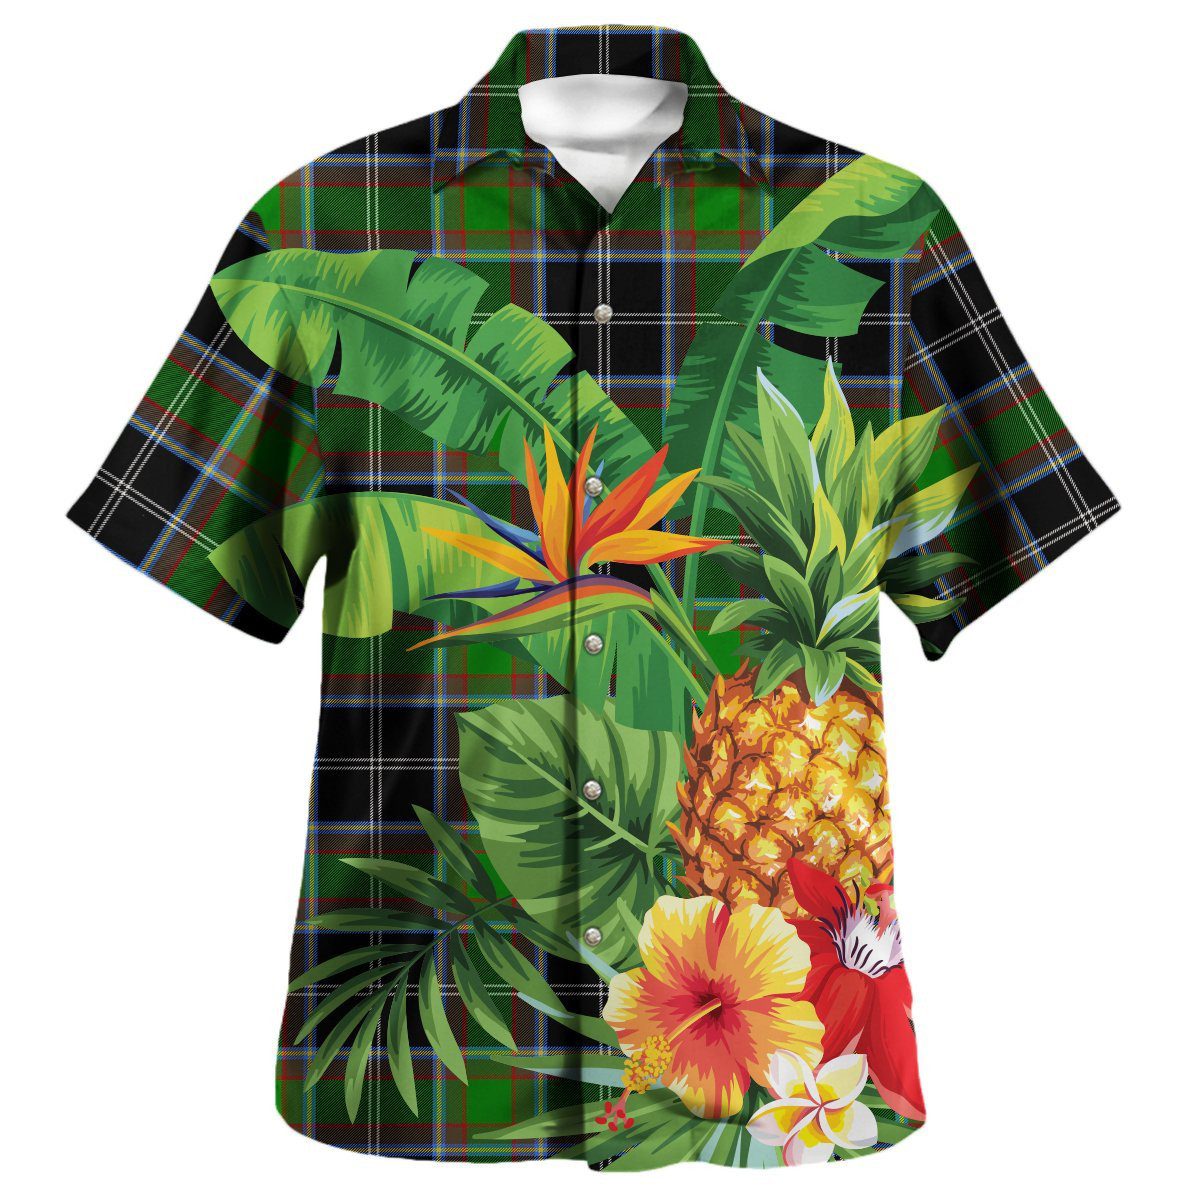 Webster Tartan Aloha Shirt version 2